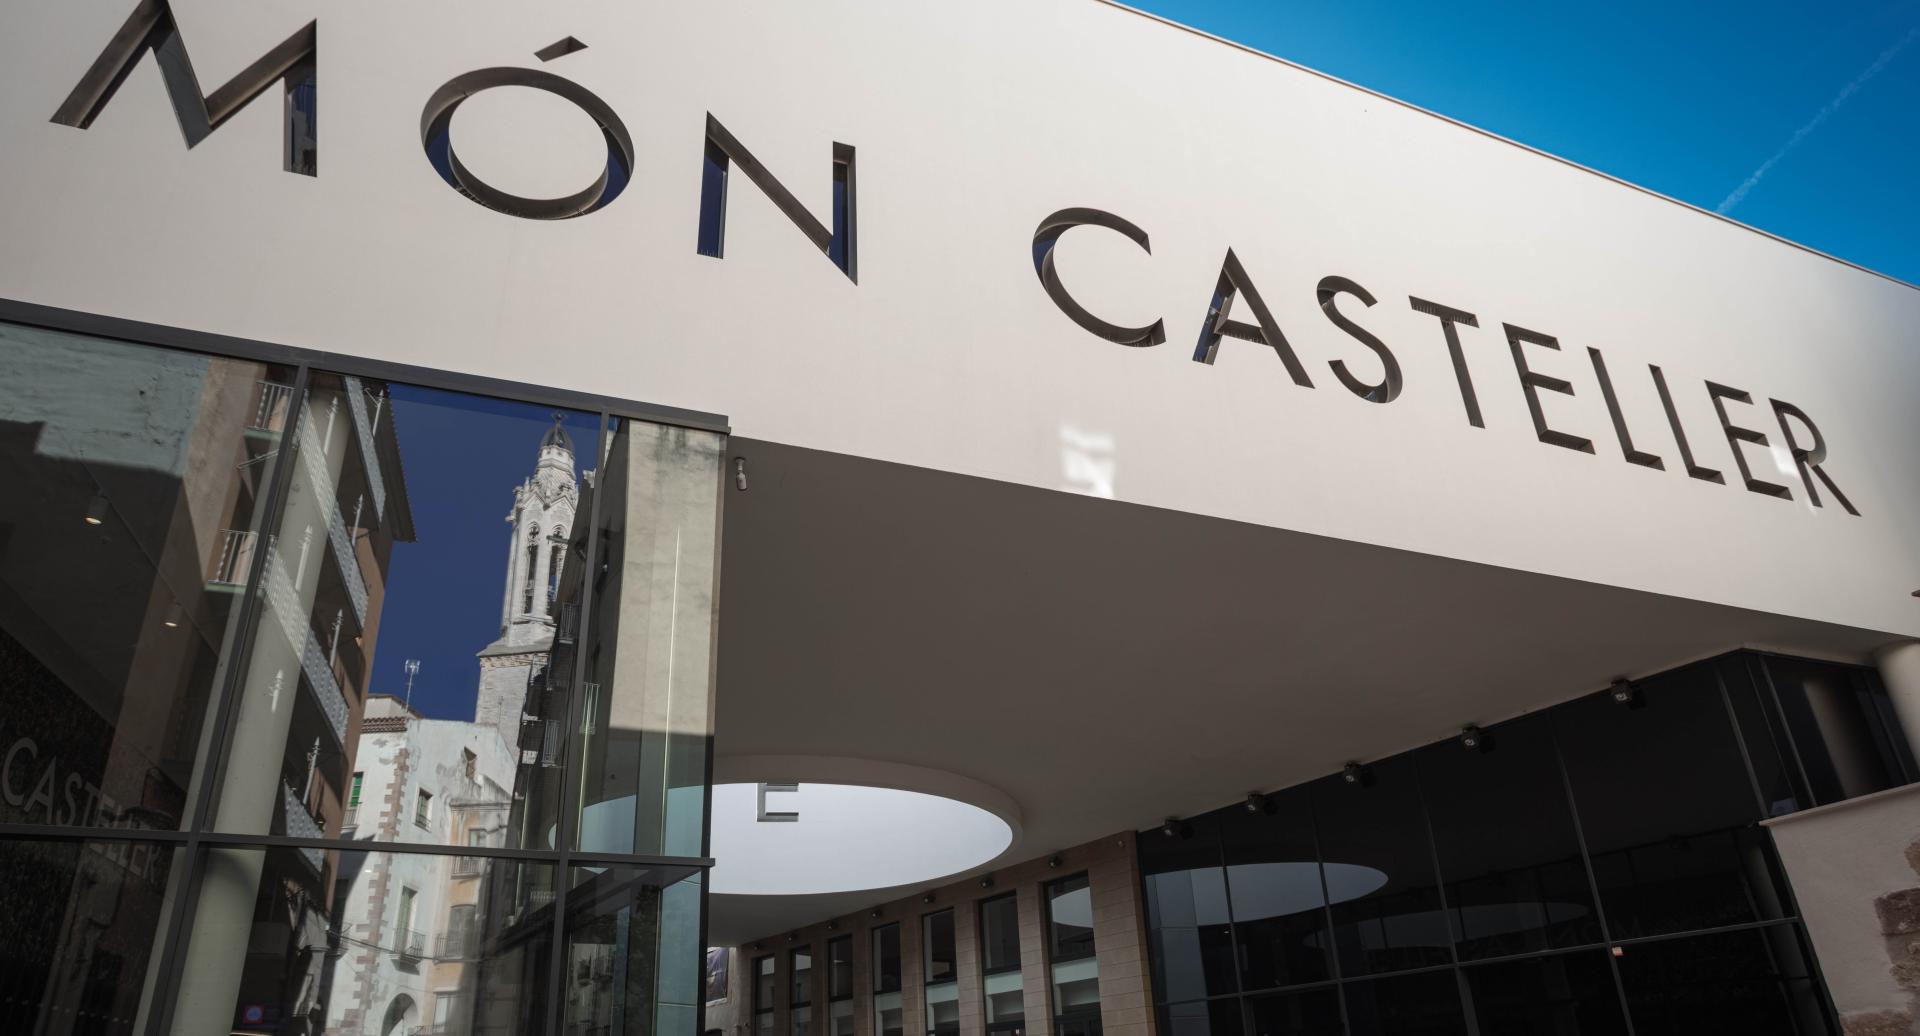 New Museu Casteller